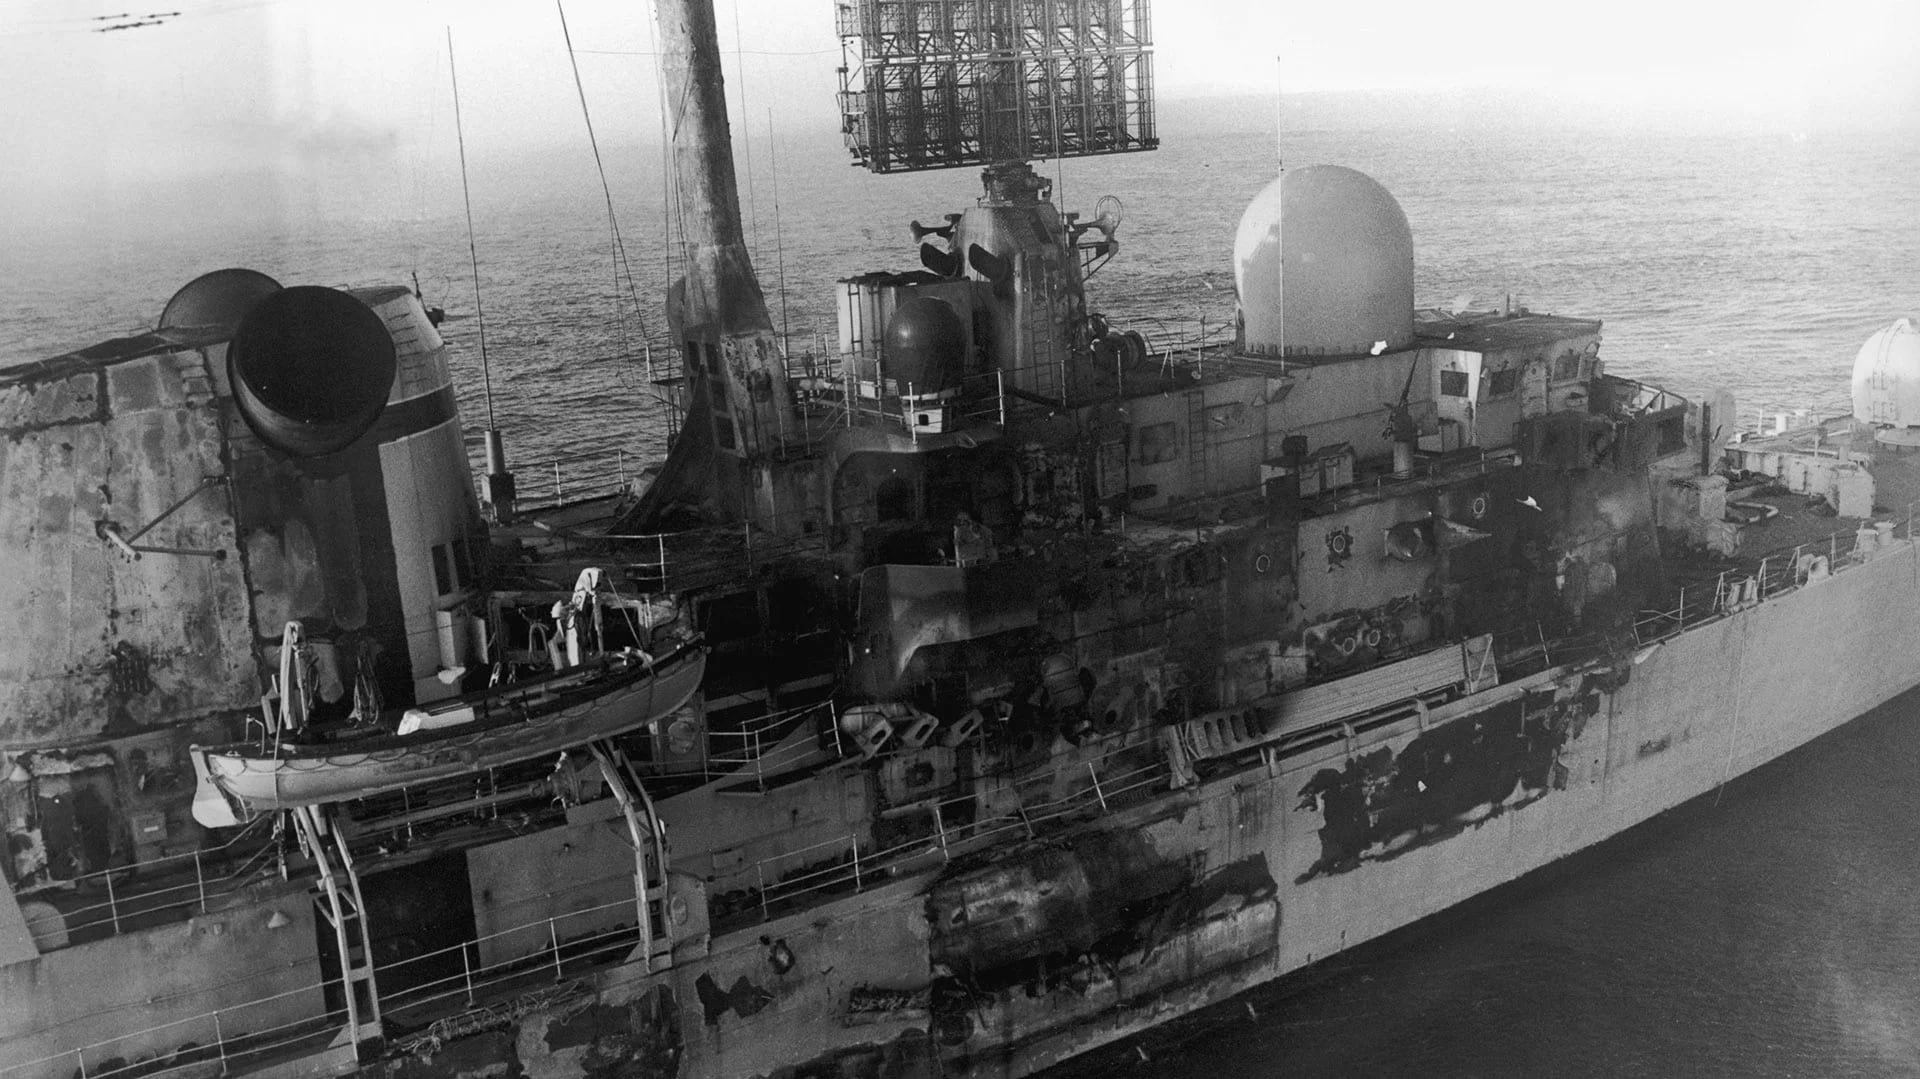 La buque HMS Sheffield fue atacado por un misil Exocet, lanzado por los Super Étendard de la Armada Argentina, el 4 de mayo de 1982. Veinte personas murieron y el barco se hundió en el Atlántico cuando era remolcado de regreso a Gran Bretaña (Martin Cleaver/Pool/Getty Images)